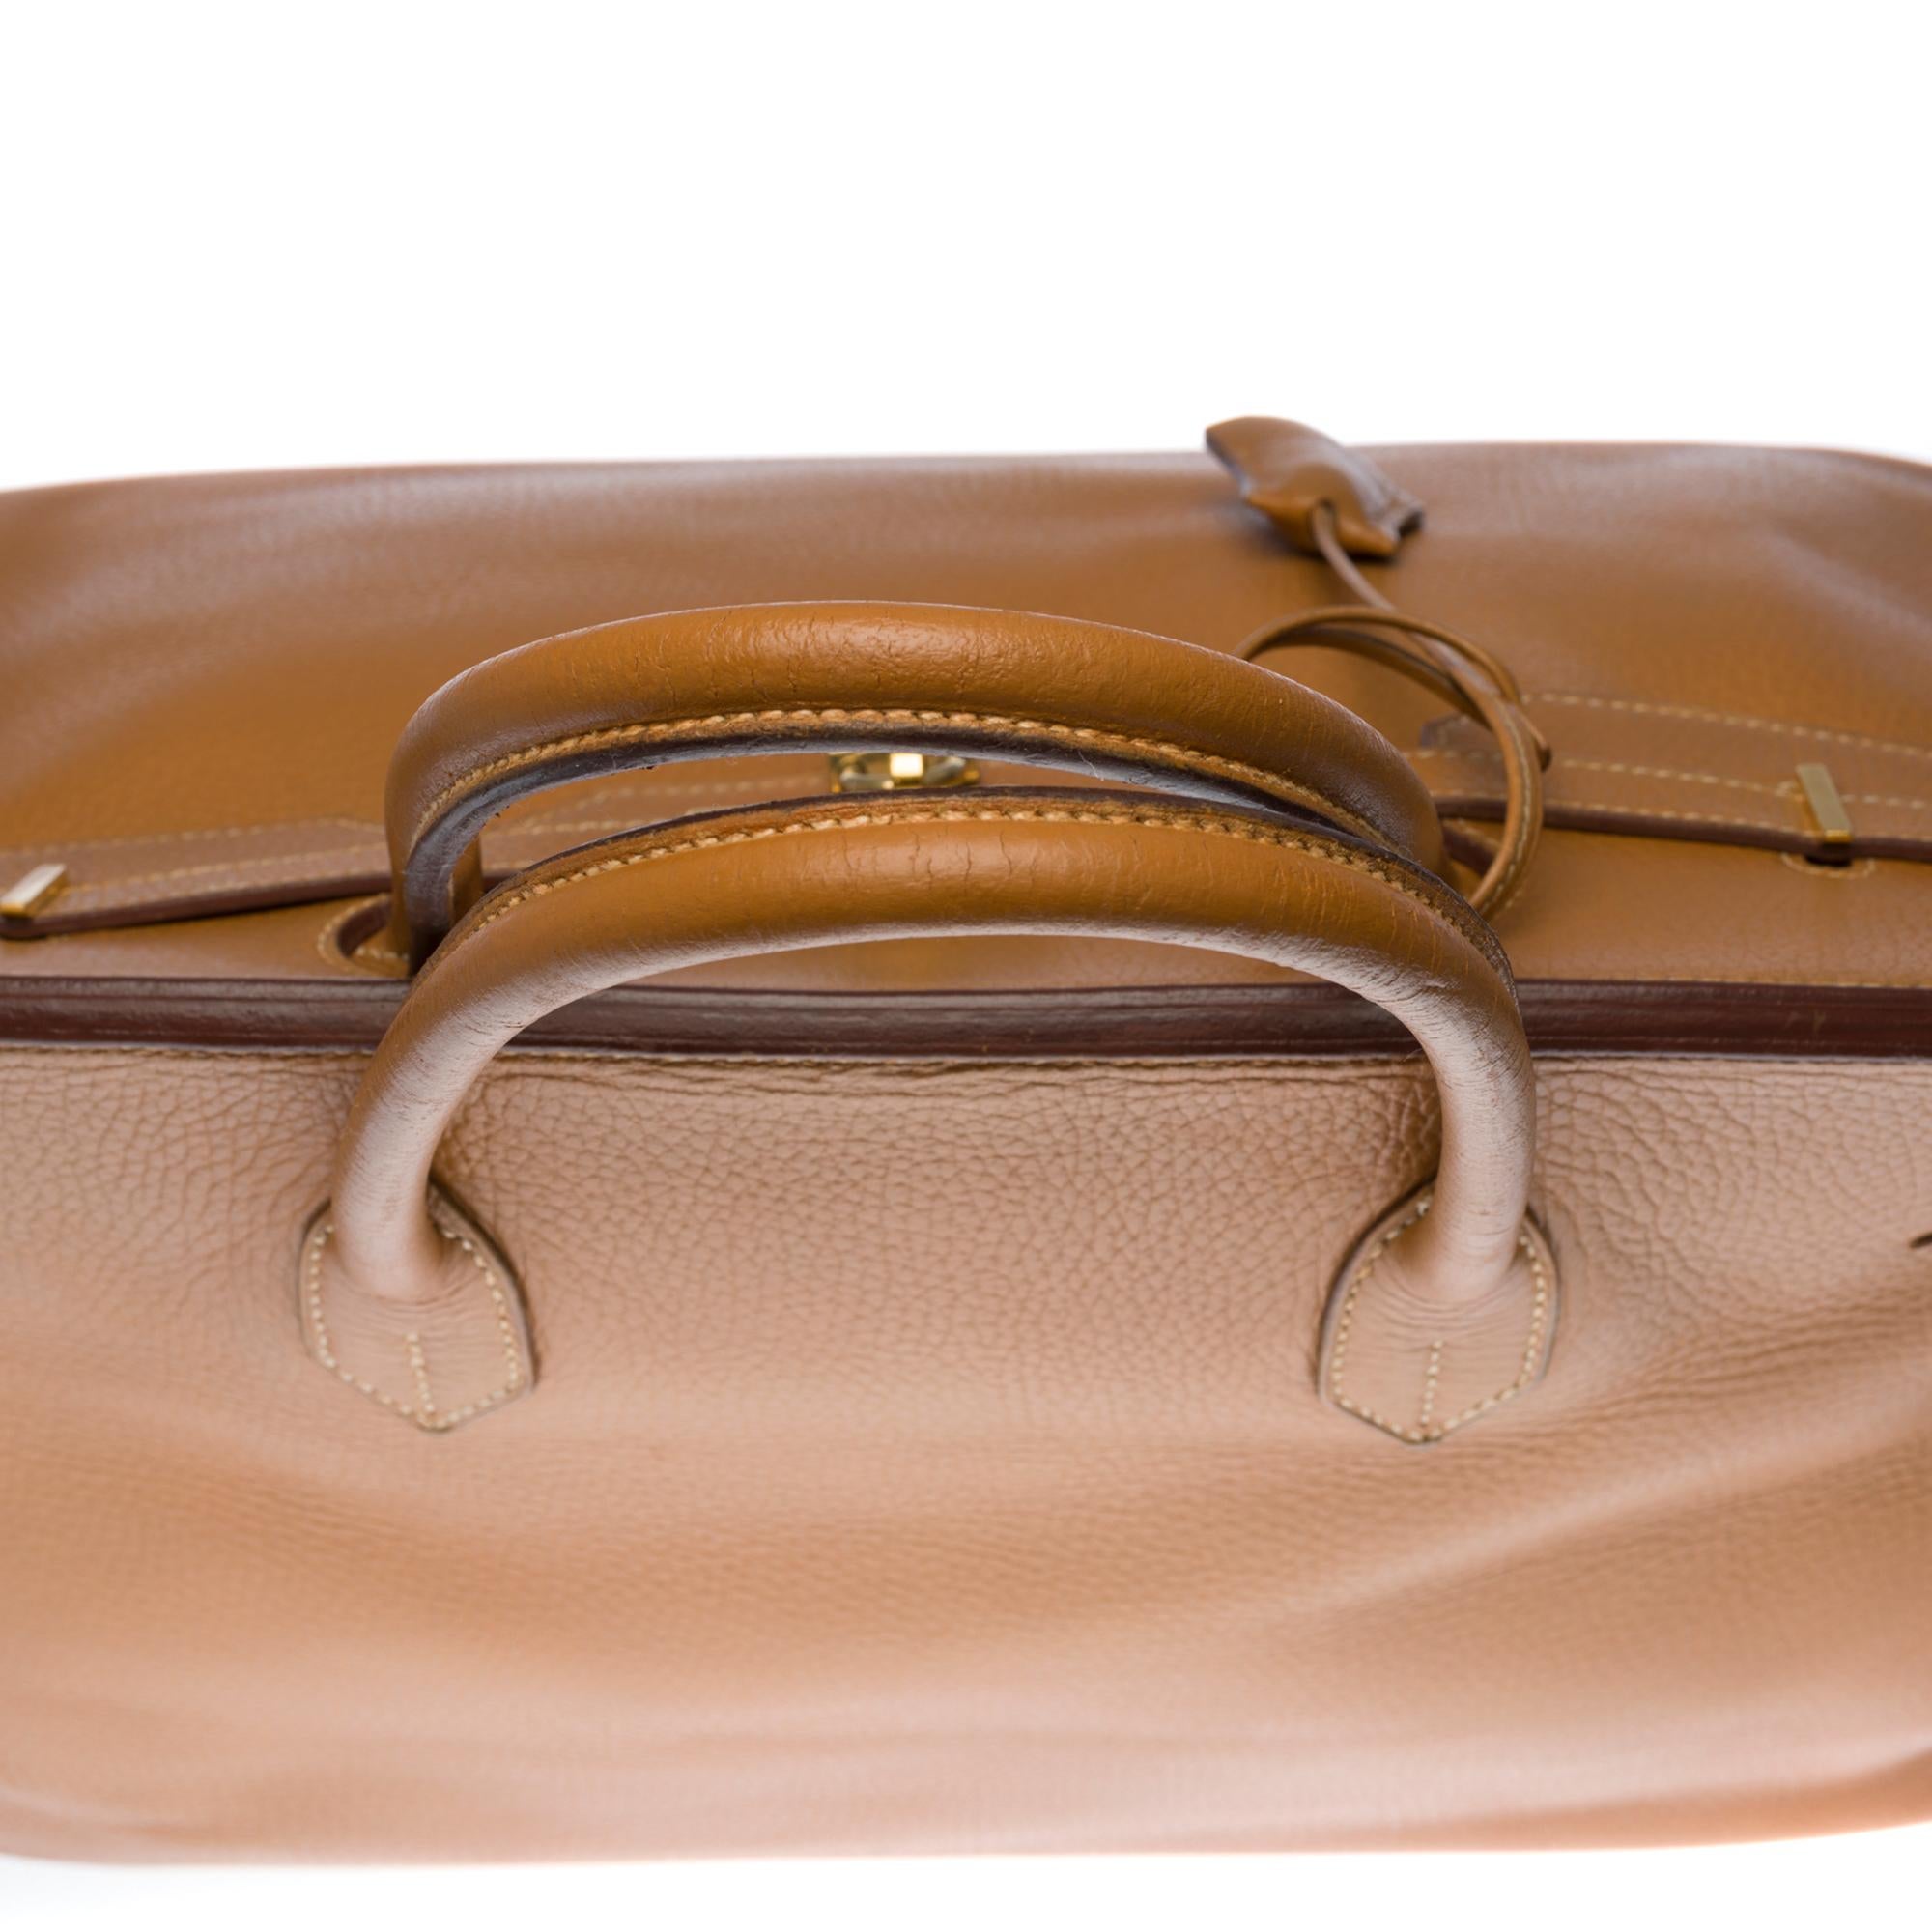 Stunning Hermes Birkin 40cm handbag in Gold Vache d'Ardenne leather, GHW 3